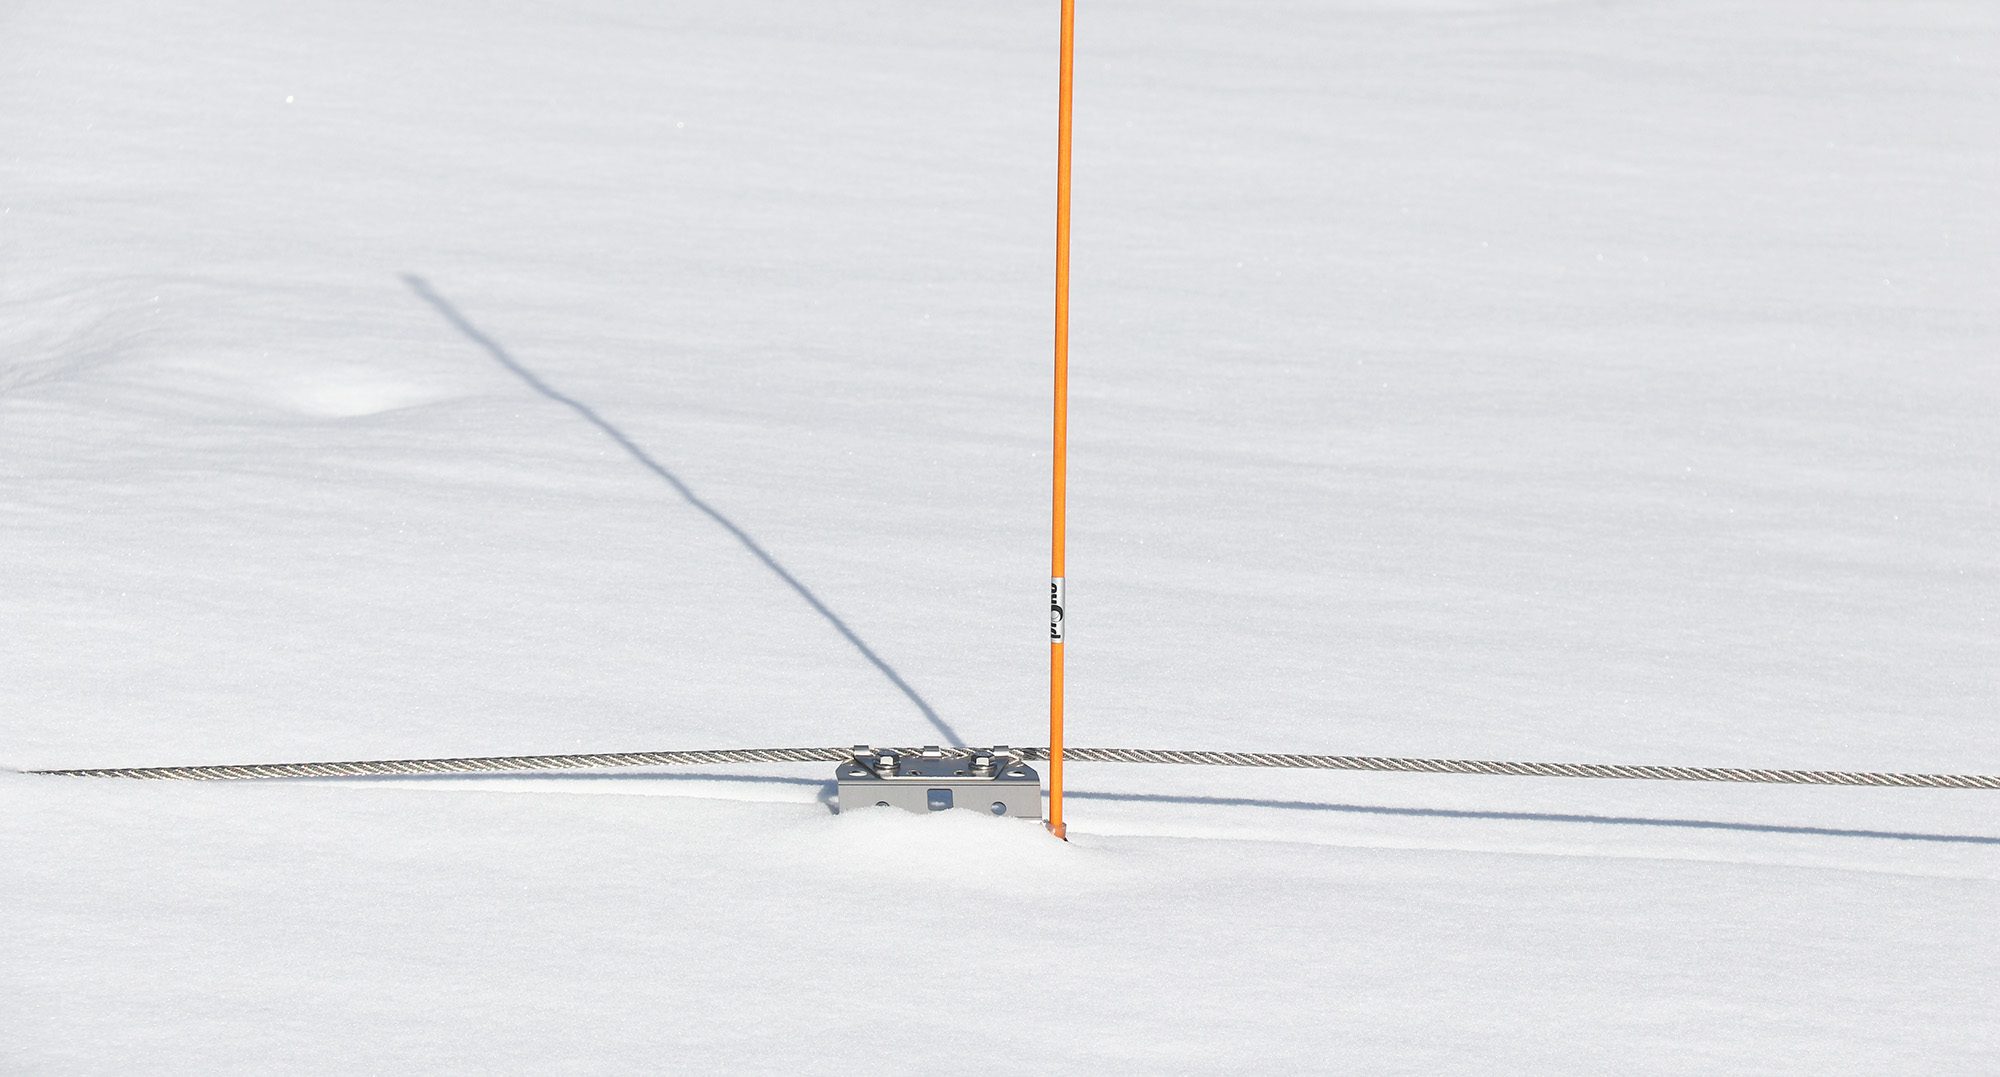 merkintäviitan avulla turvavaijeri löytyy helposti lumen alta.